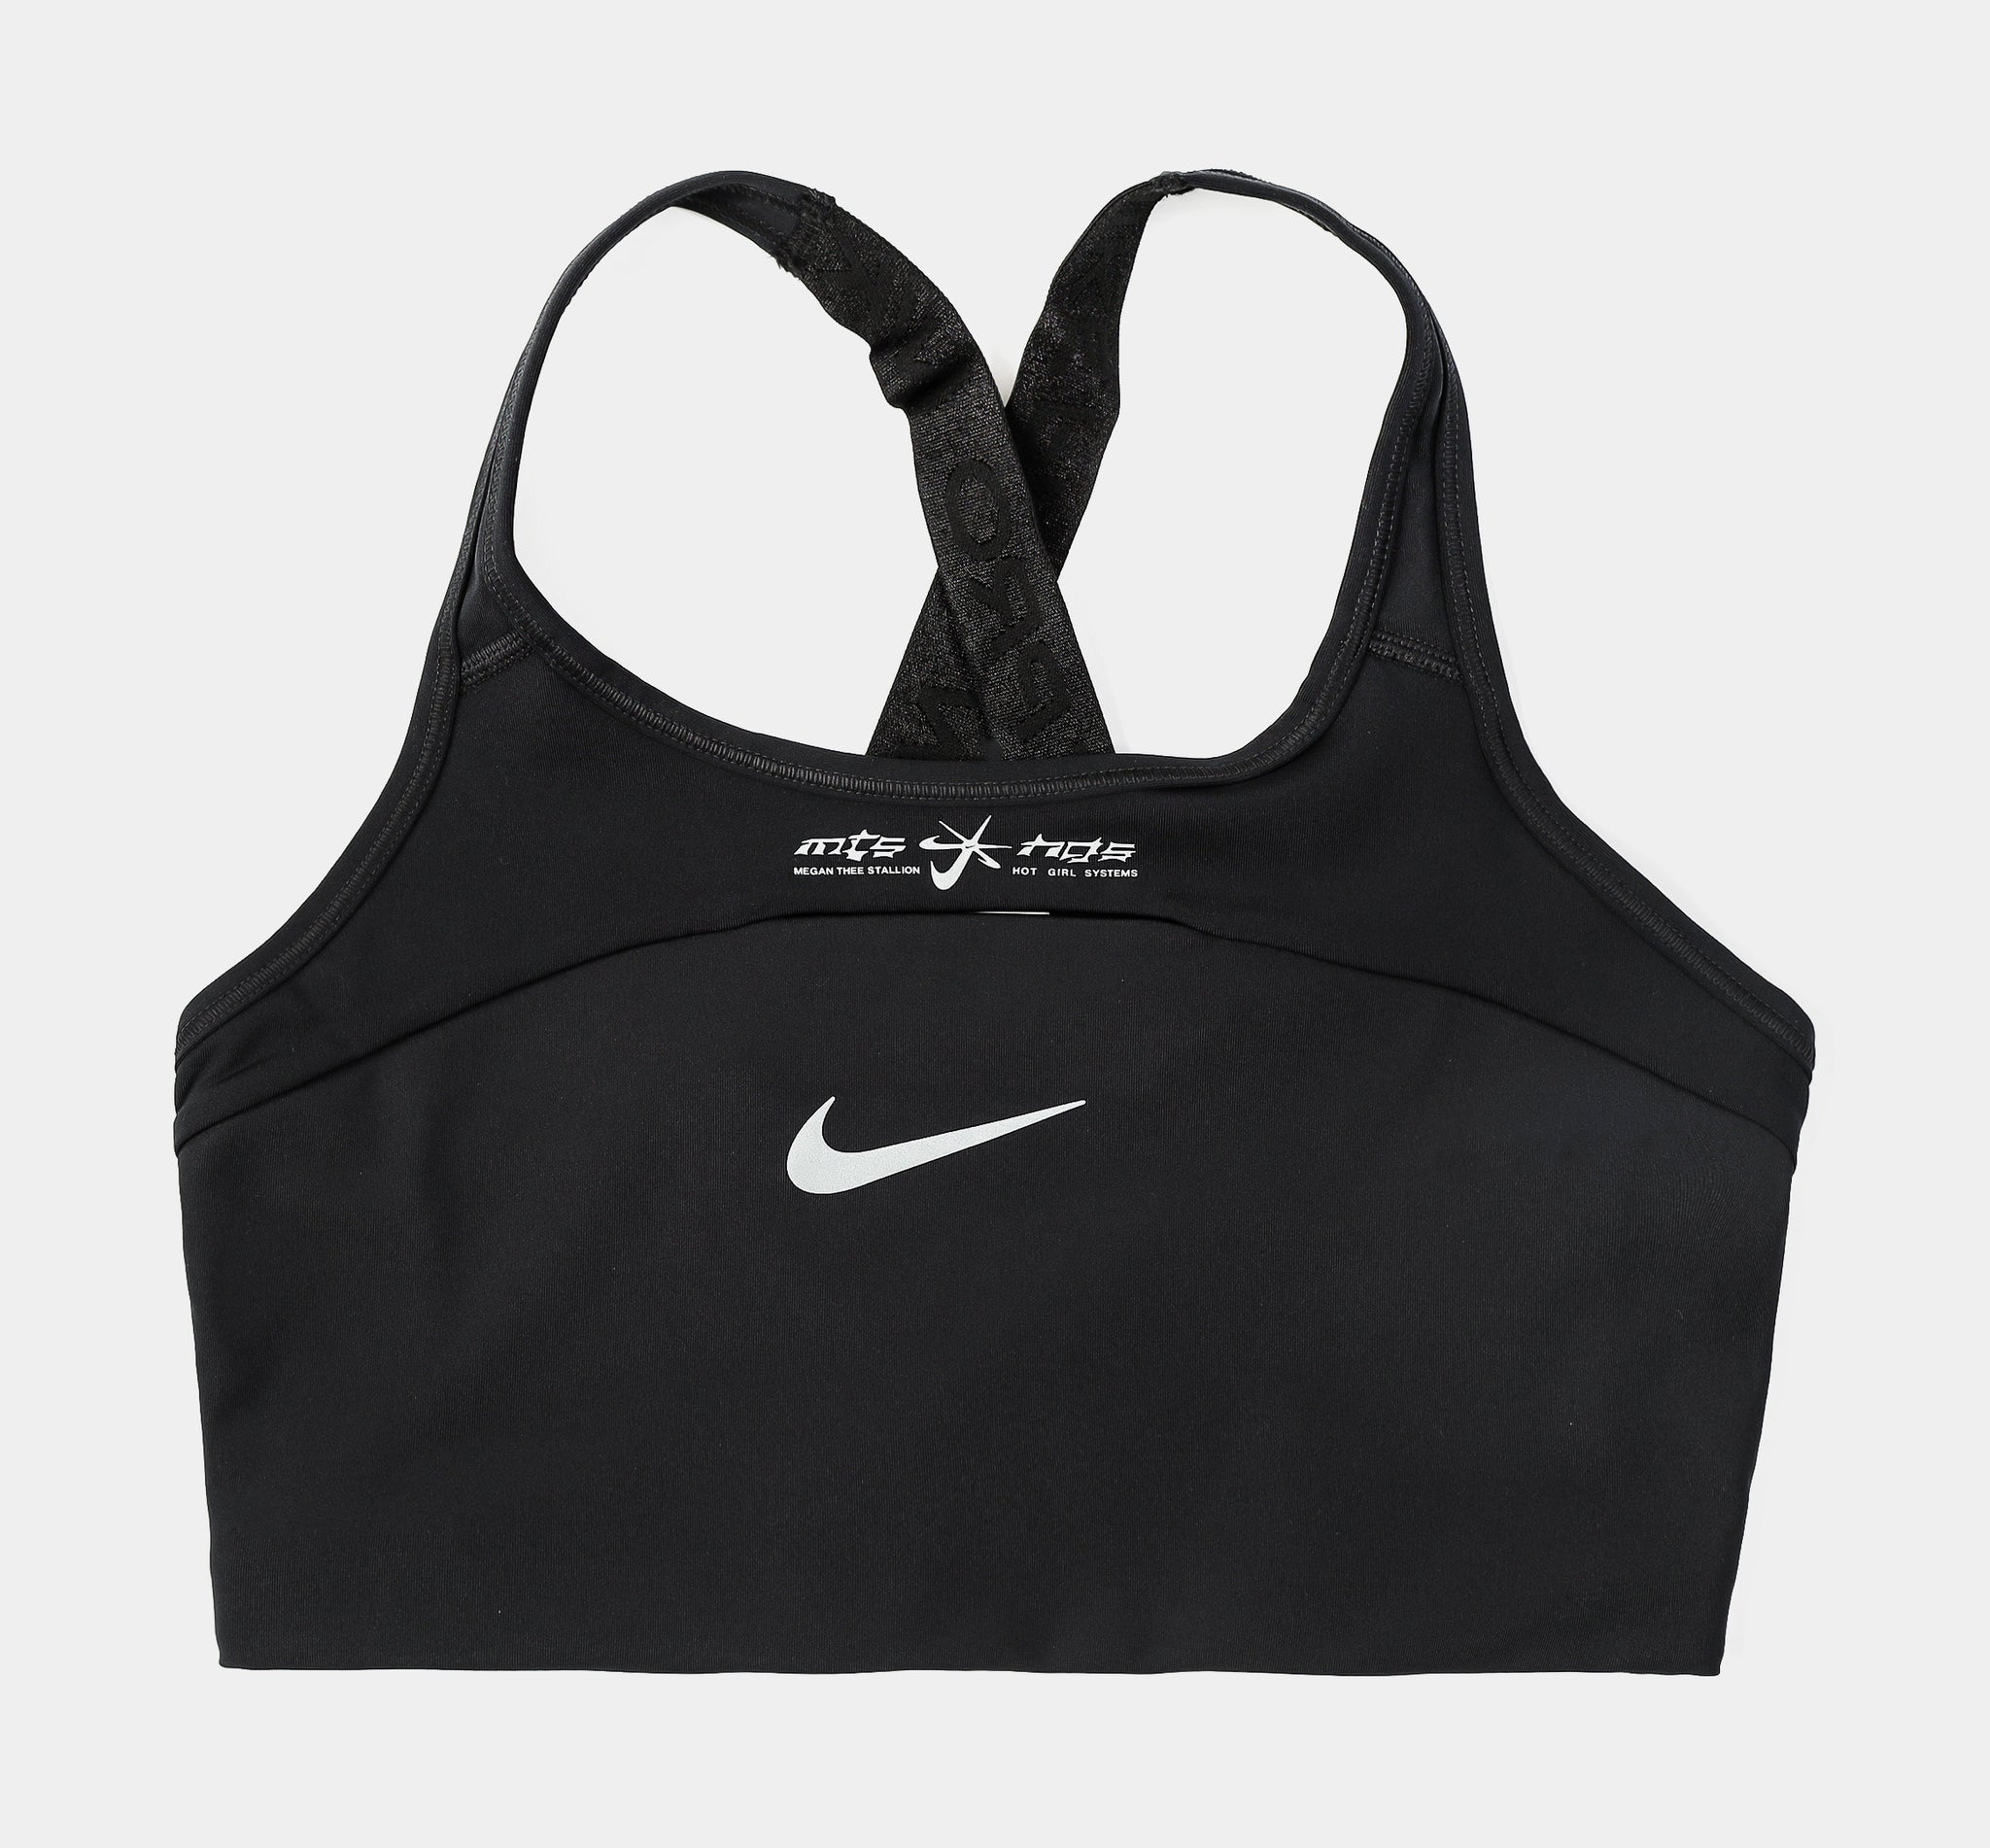 Nike Womens Swoosh Medium Support Sports Bra Purple XL